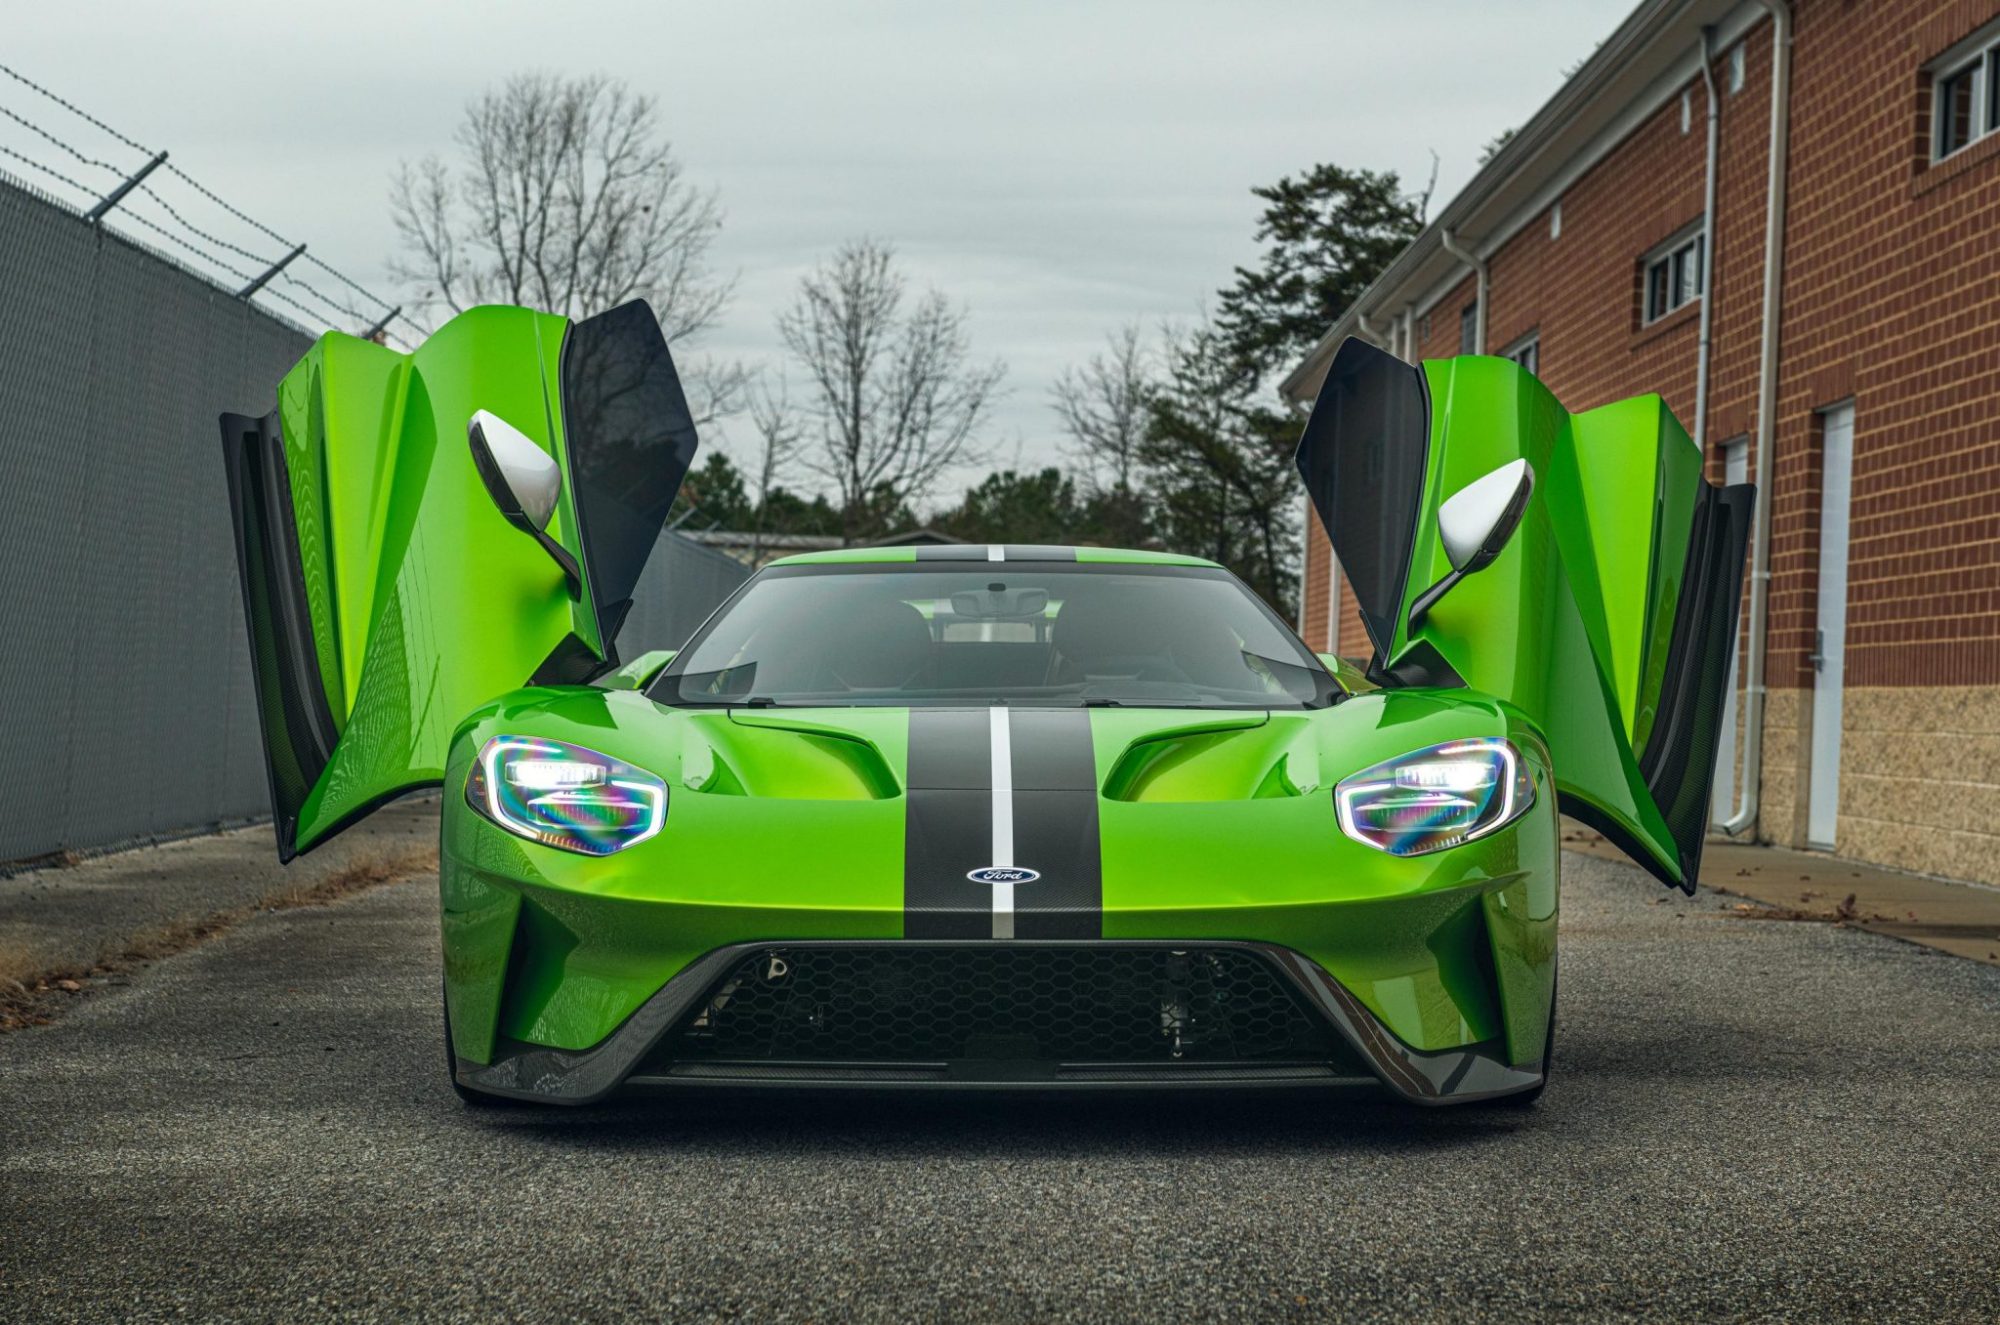 售价超100万美元,这辆蛇皮绿色的2019款福特gt二手超跑太帅了